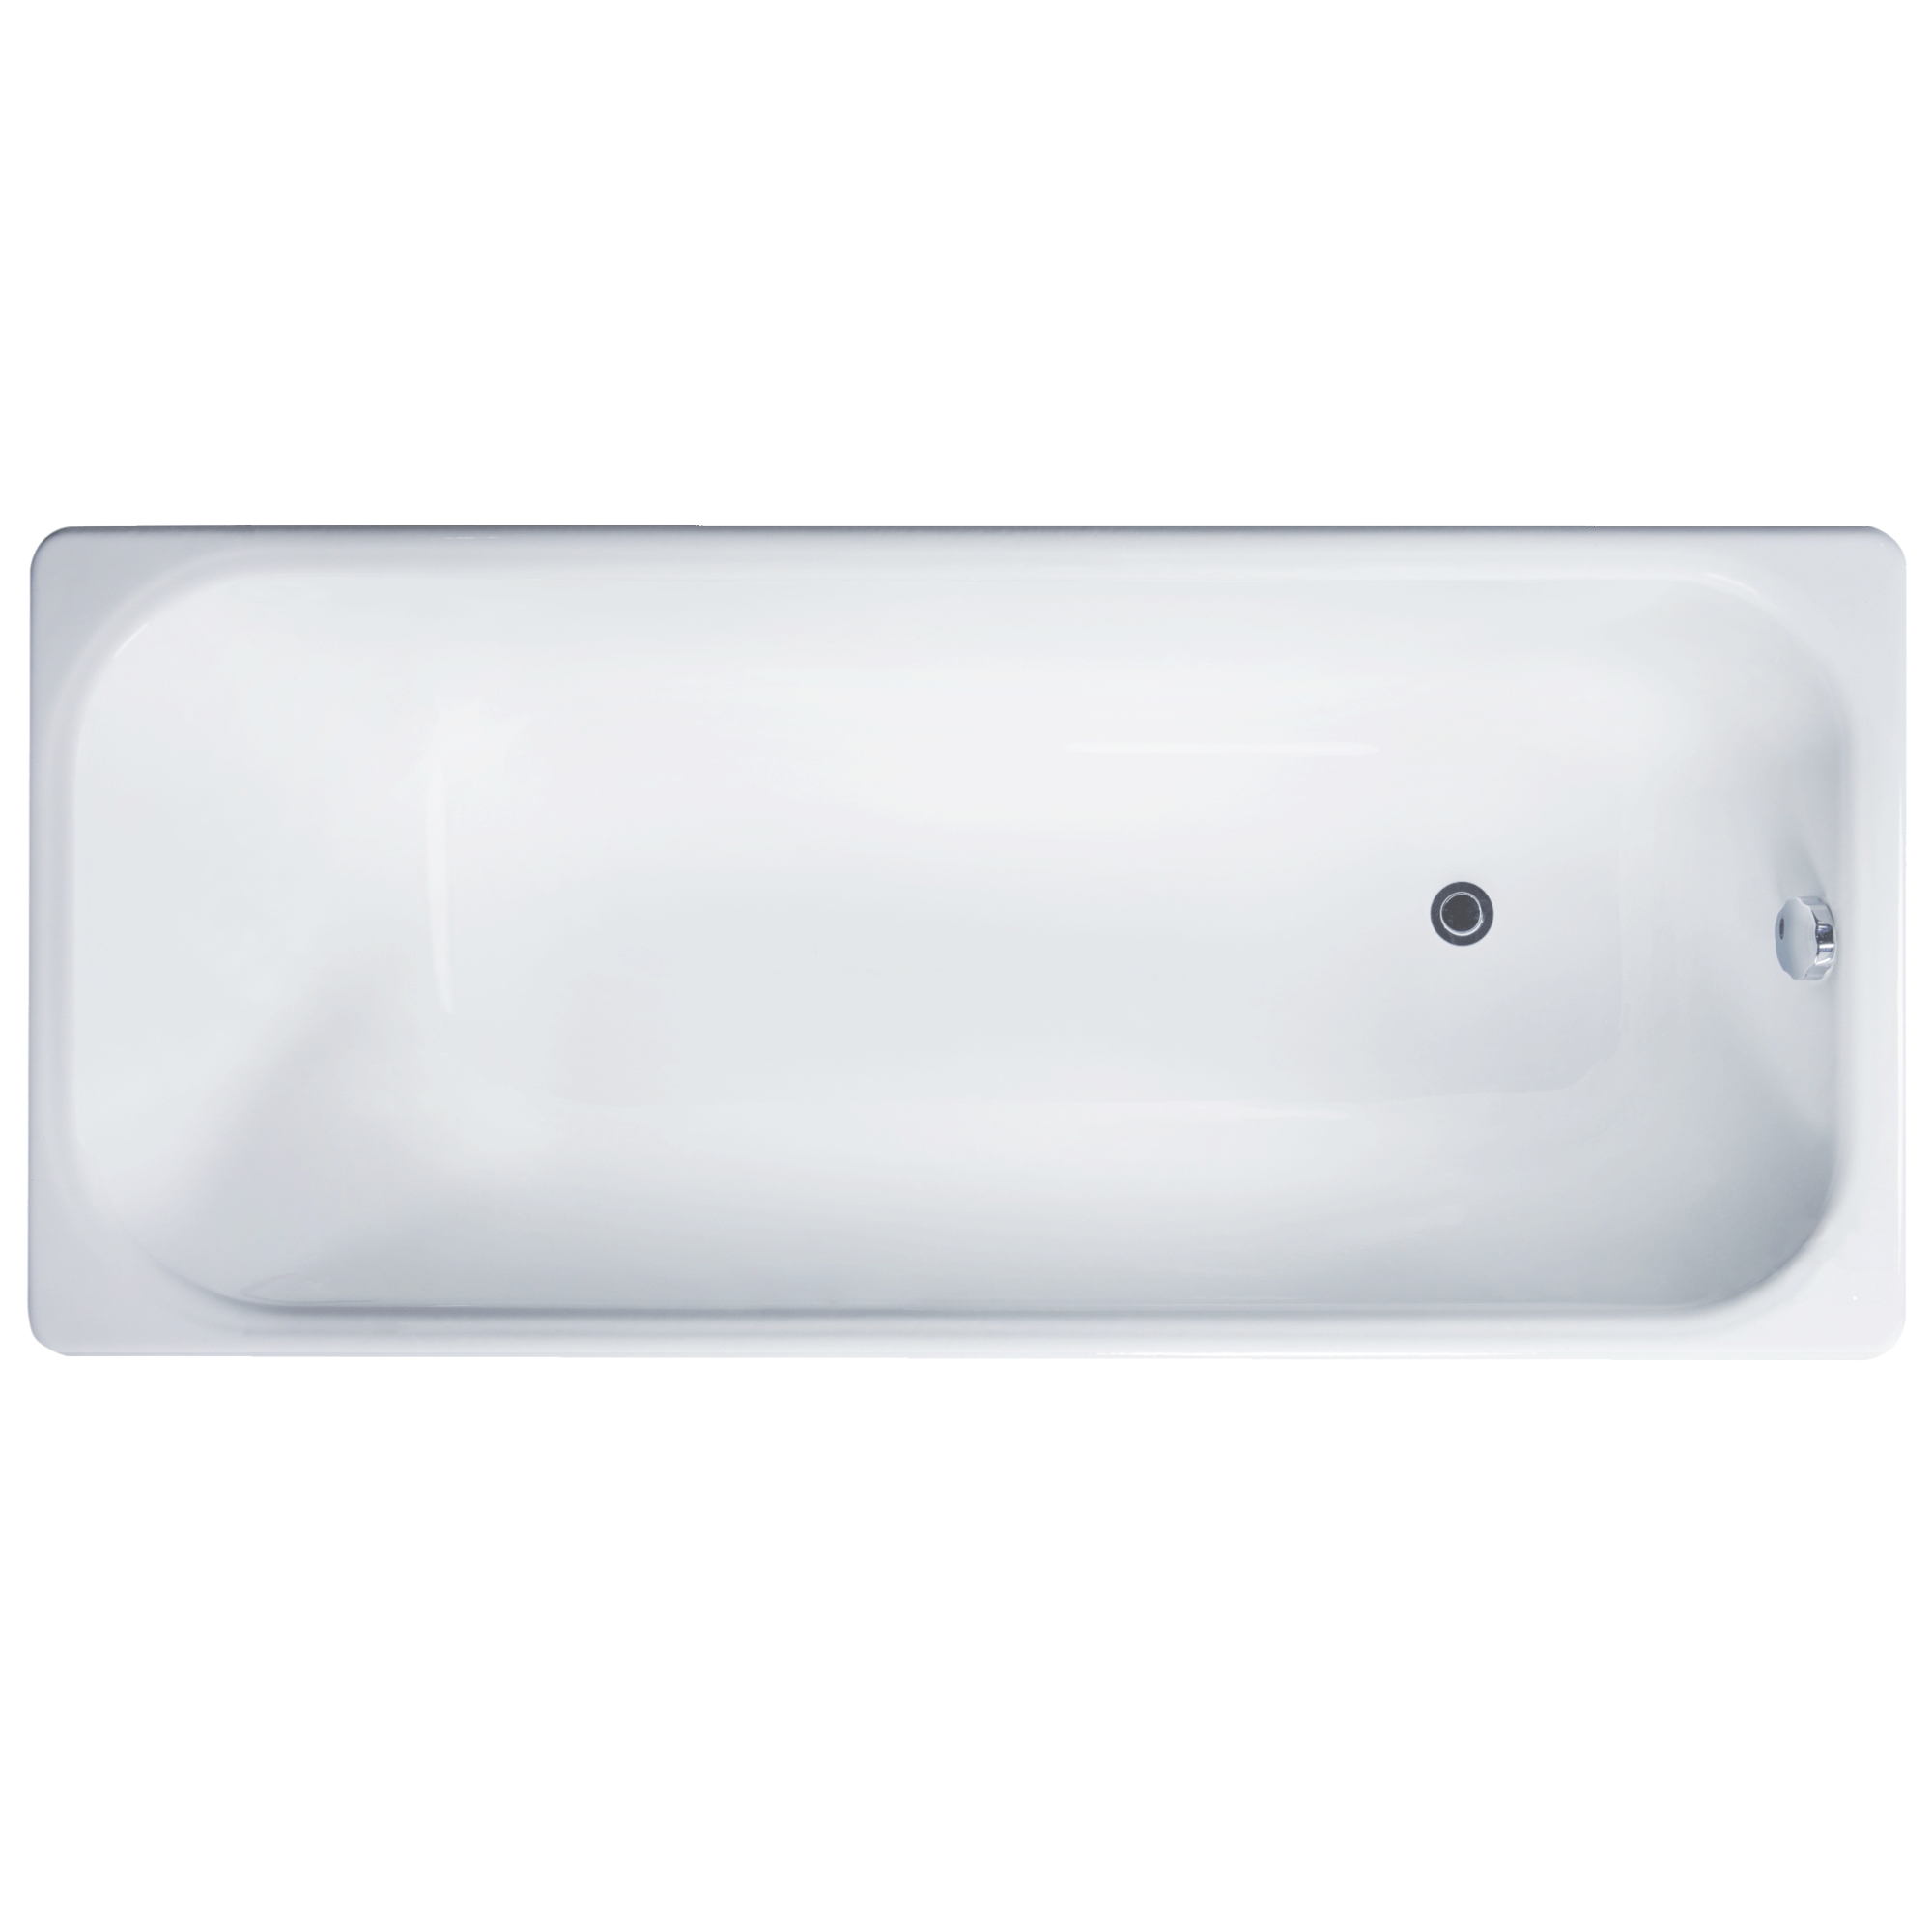 Чугунная ванна Delice Aurora 150x70 DLR230617 на ножках, цвет белый DLR230617+DLR000012 - фото 1